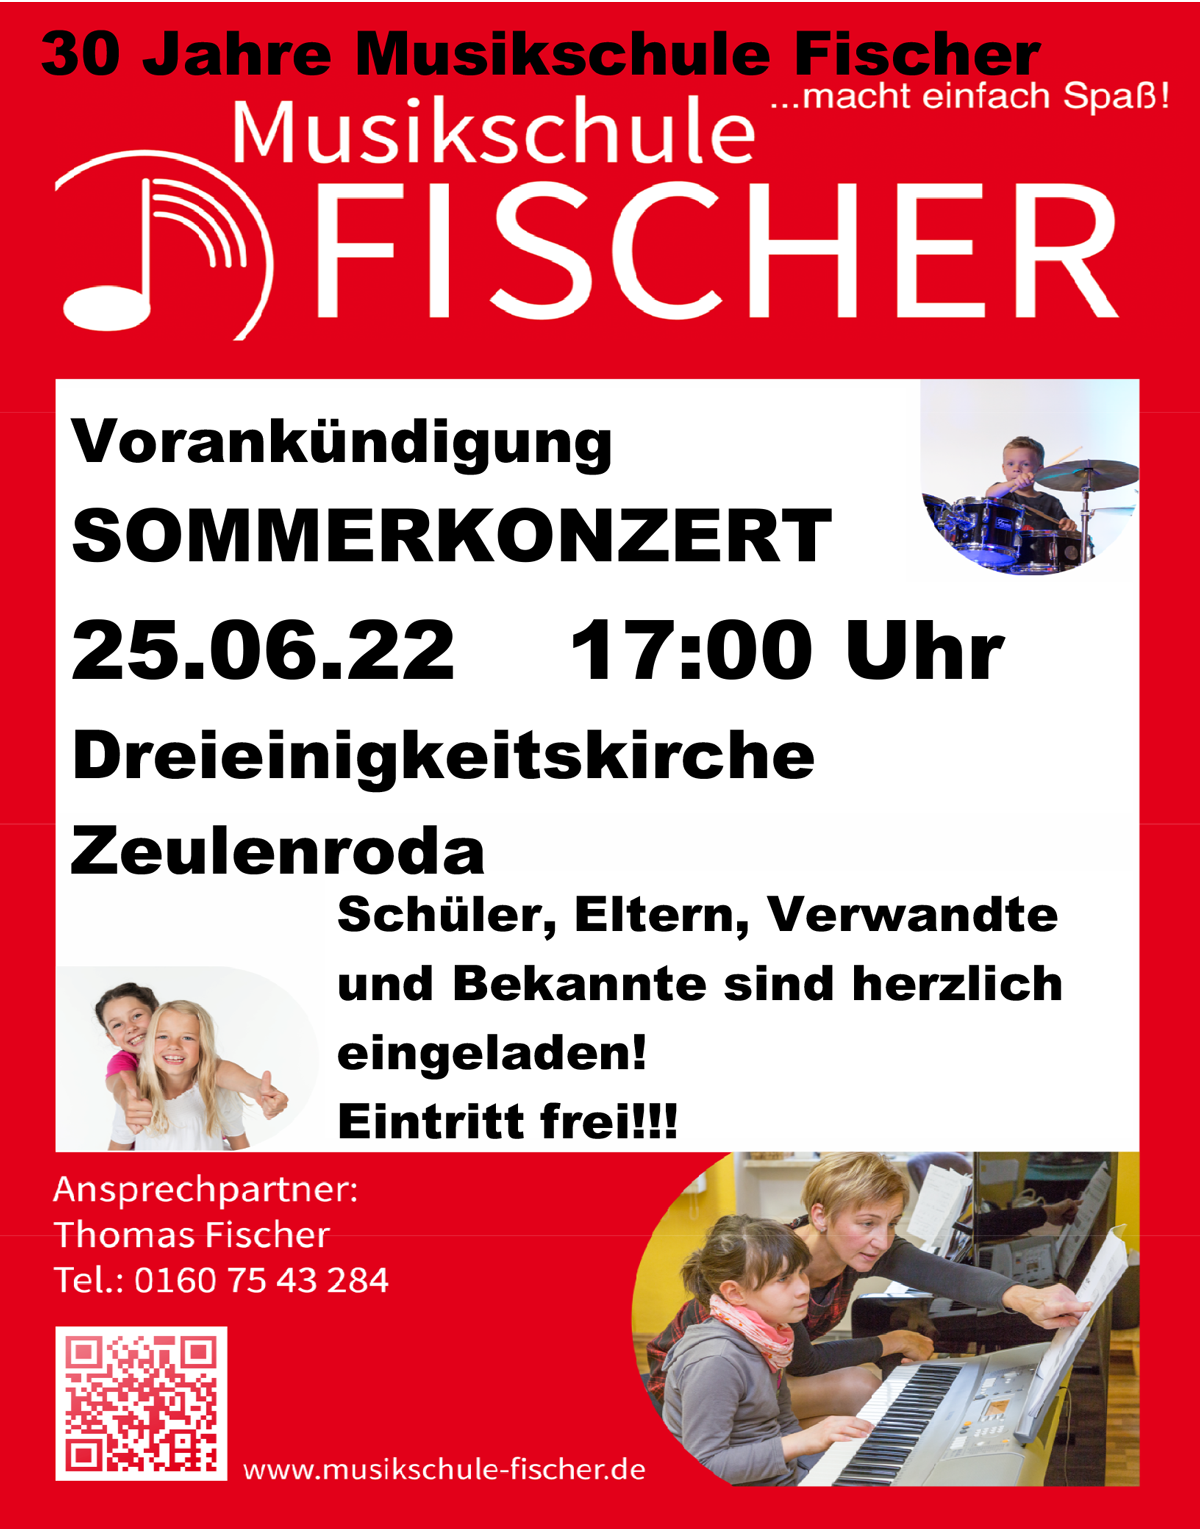 Sommerkonzert der Musikschule Fischer am 25. Juni 2022